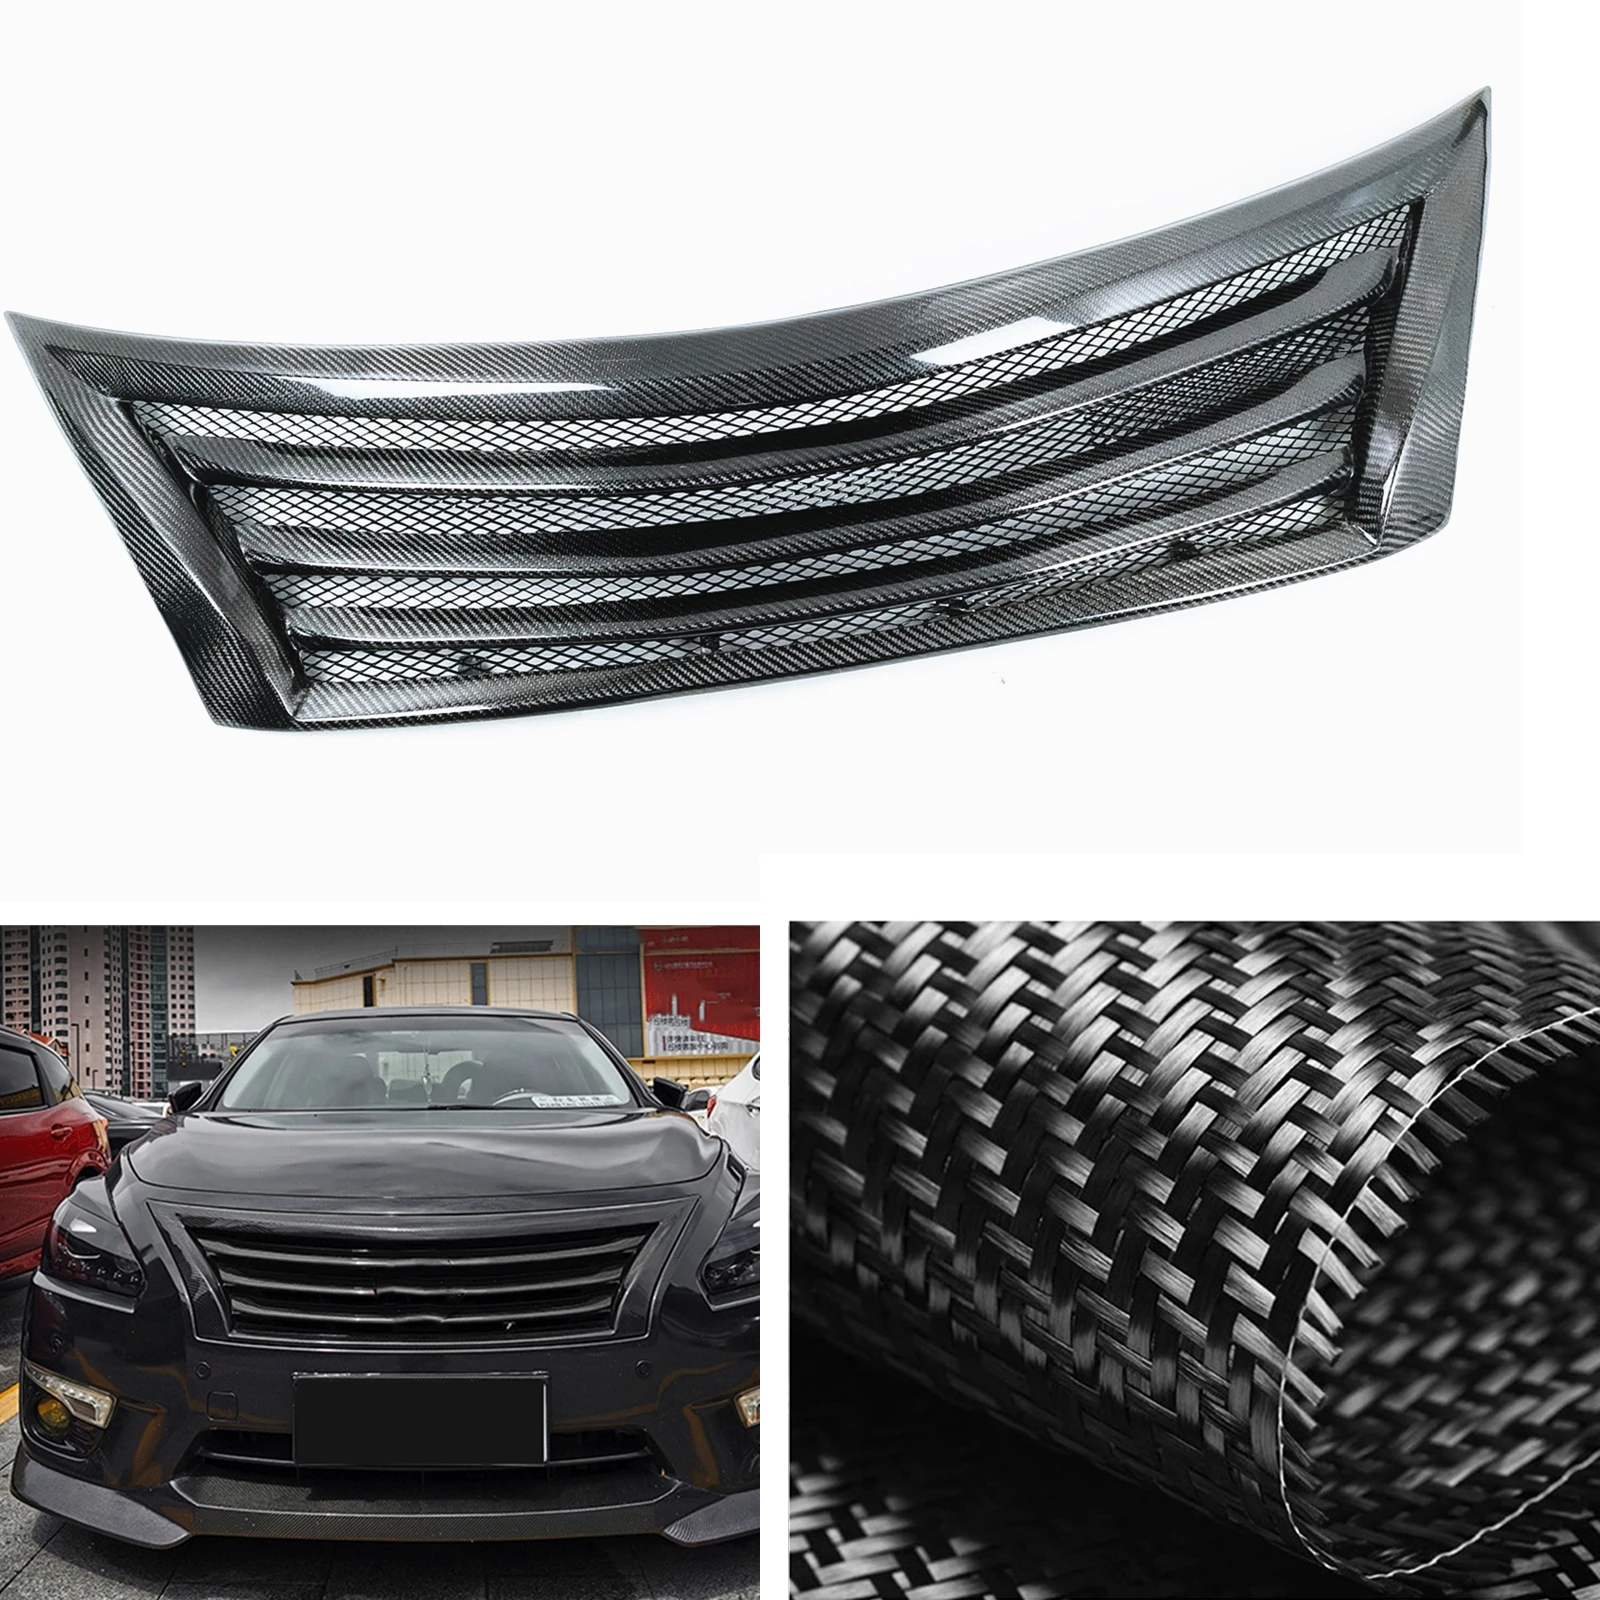 

Передняя решетка для Nissan Teana Altima 2013, 2014, 2015, гоночные решетки из настоящего углеродного волокна/стекловолокна, верхний бампер автомобиля, аналогичная сетка